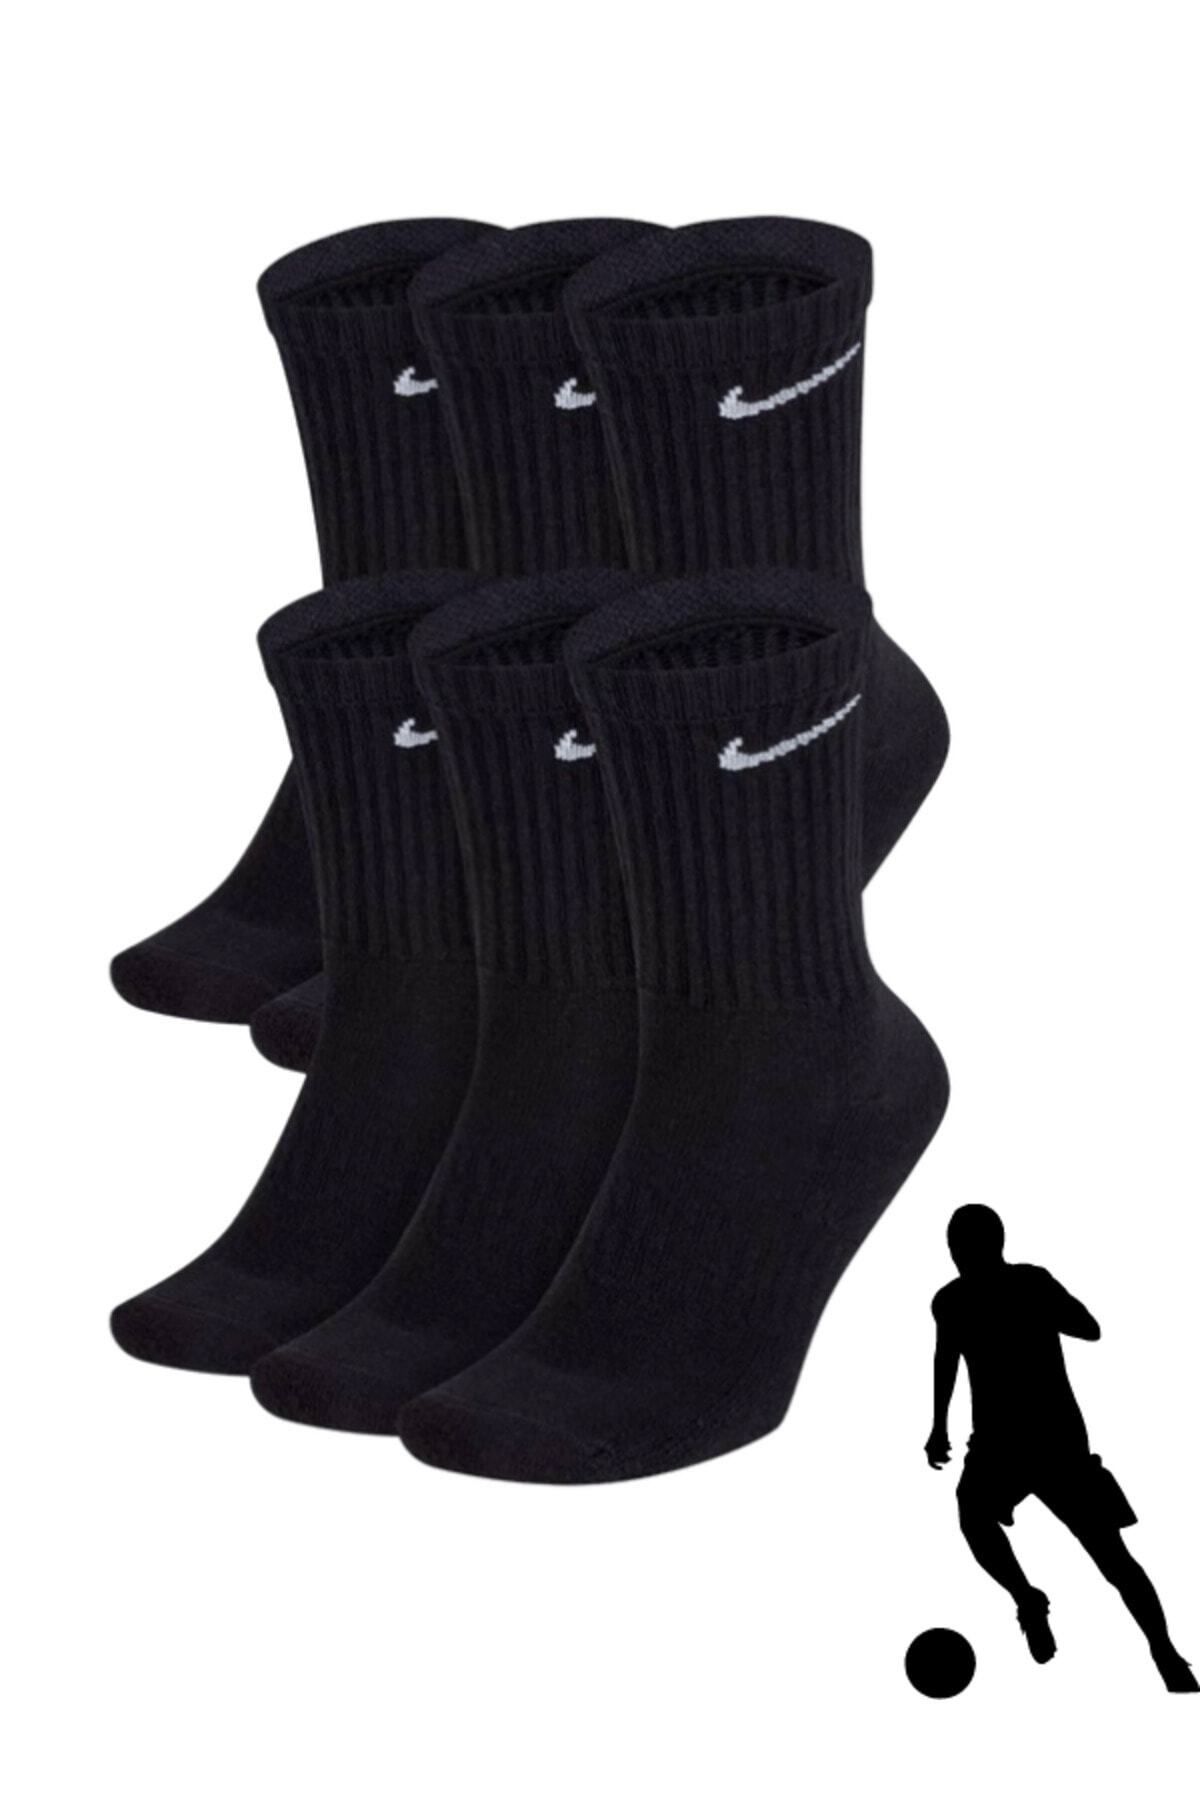 Bonapart 6'lı Unisex Siyah Spor Antrenman Tenis Futbol Basketbol Koşu Çorap Seti